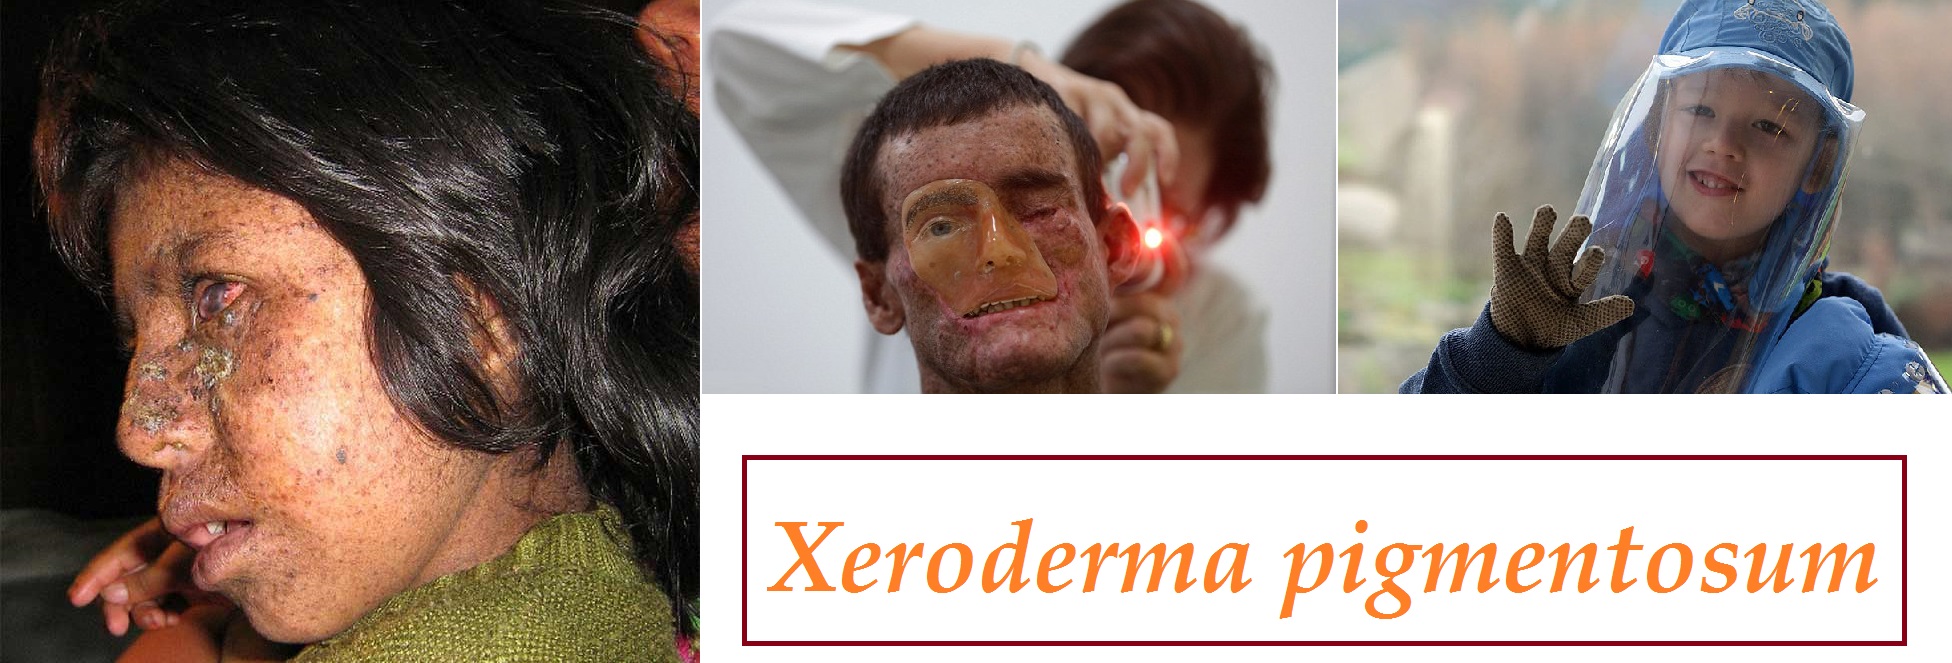 xeroderma pigmentosum fotografie priznaky projevy symptomy pricina lecba obrazek